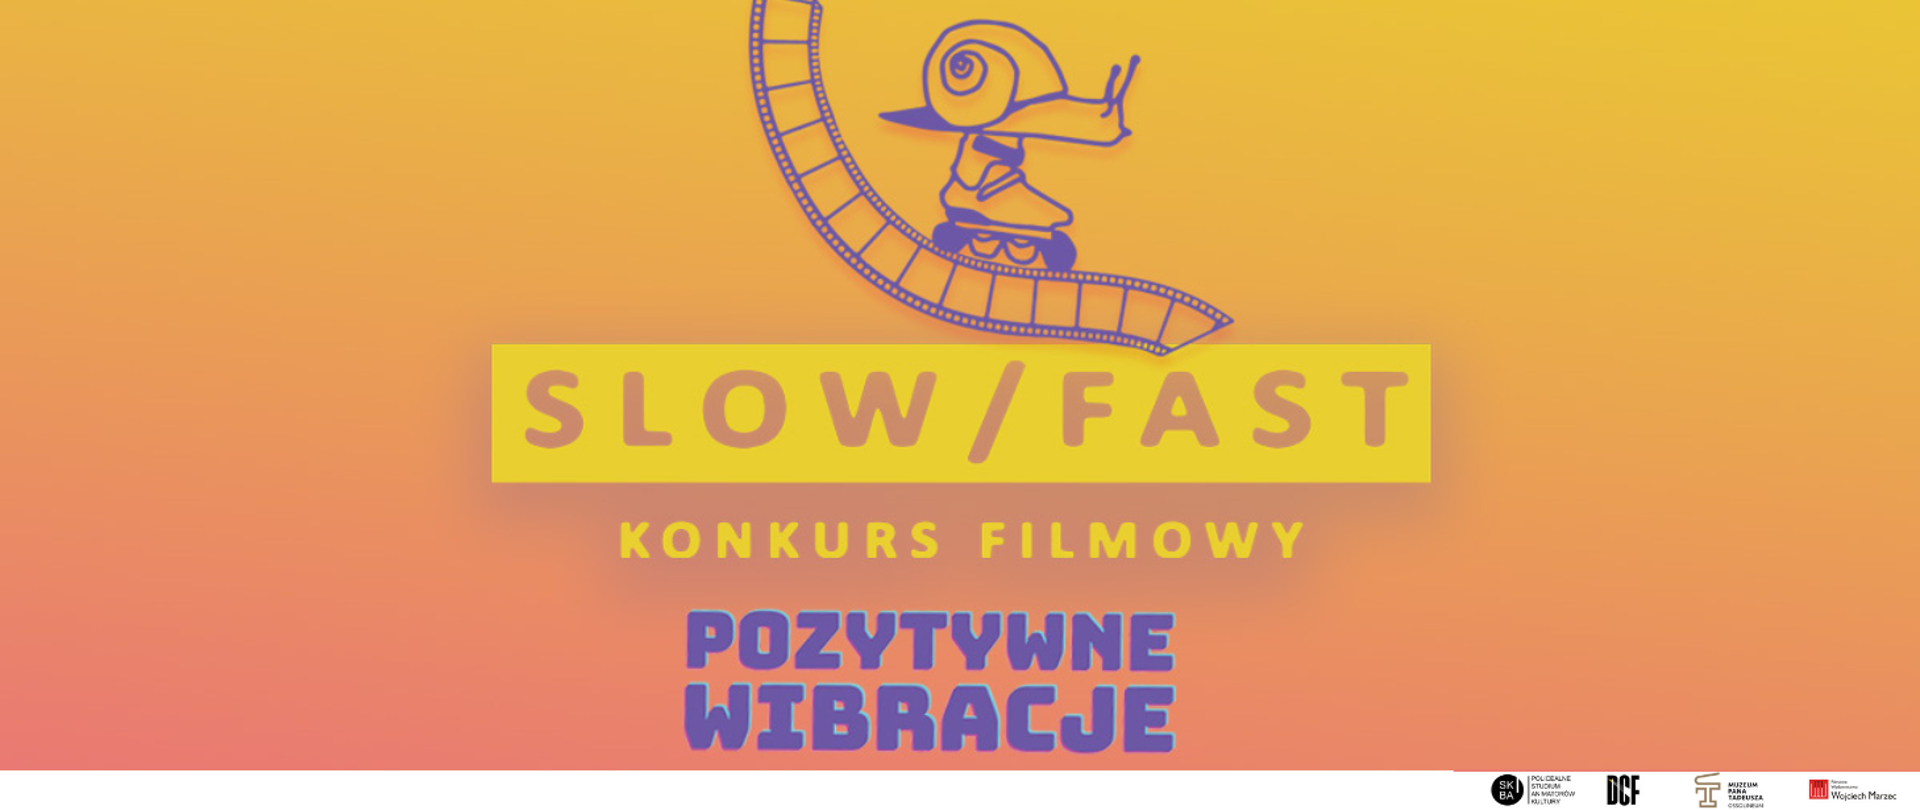 grafika, tło pomarańczowo-różowe, po środku ślimak zjeżdżający po taśmie filmowej, pod nim napis wielkimi literami slow fast konkurs filmowy pozytywne wibracje